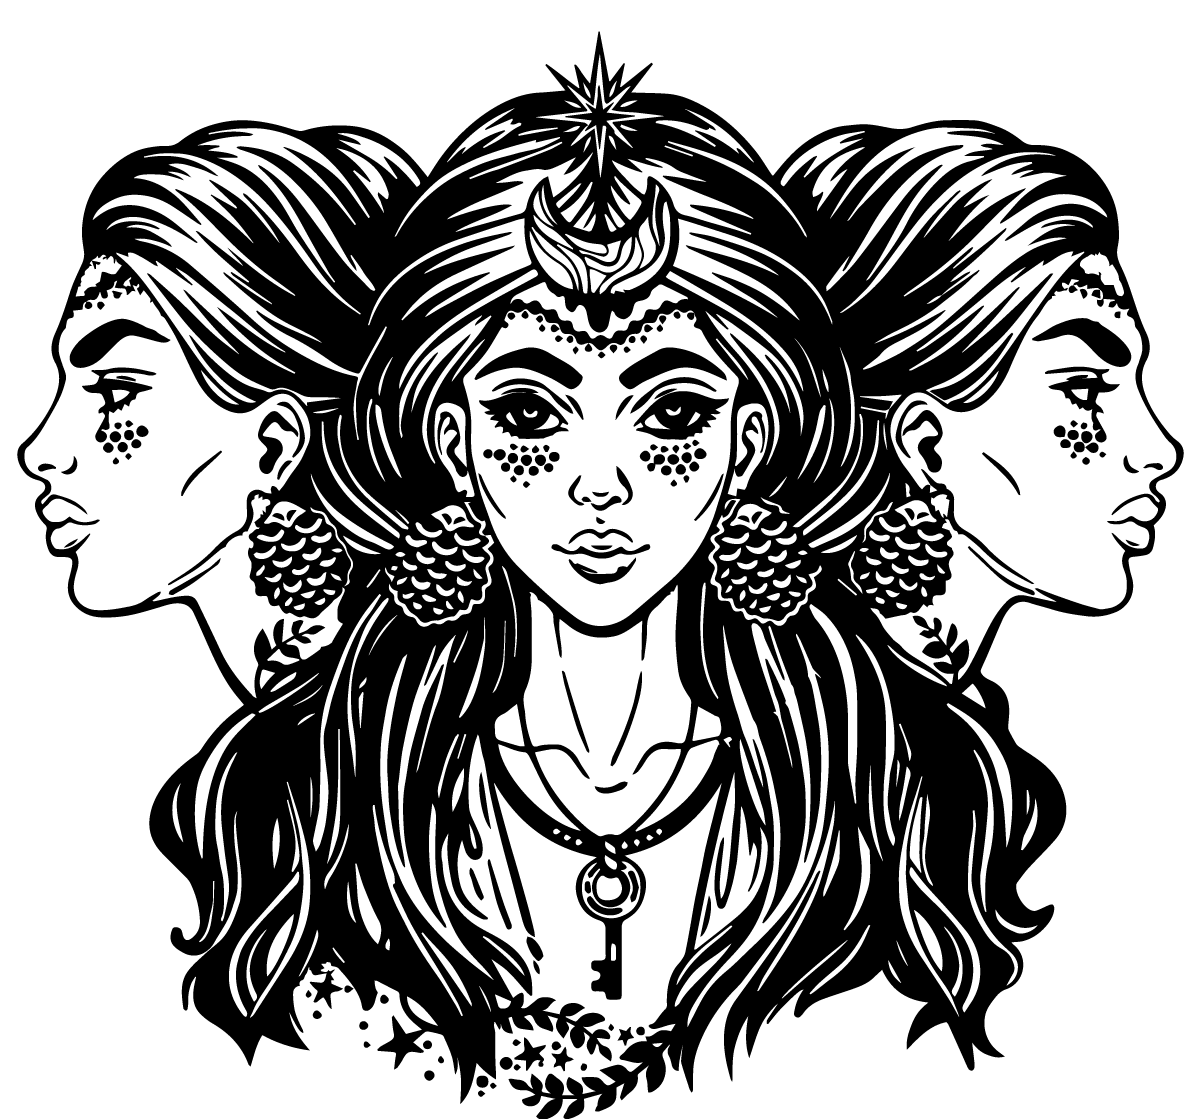 Gods worn. Триединая богиня Геката. Греческая богиня Геката. Геката богиня Луны. Трёхликая богиня Геката.